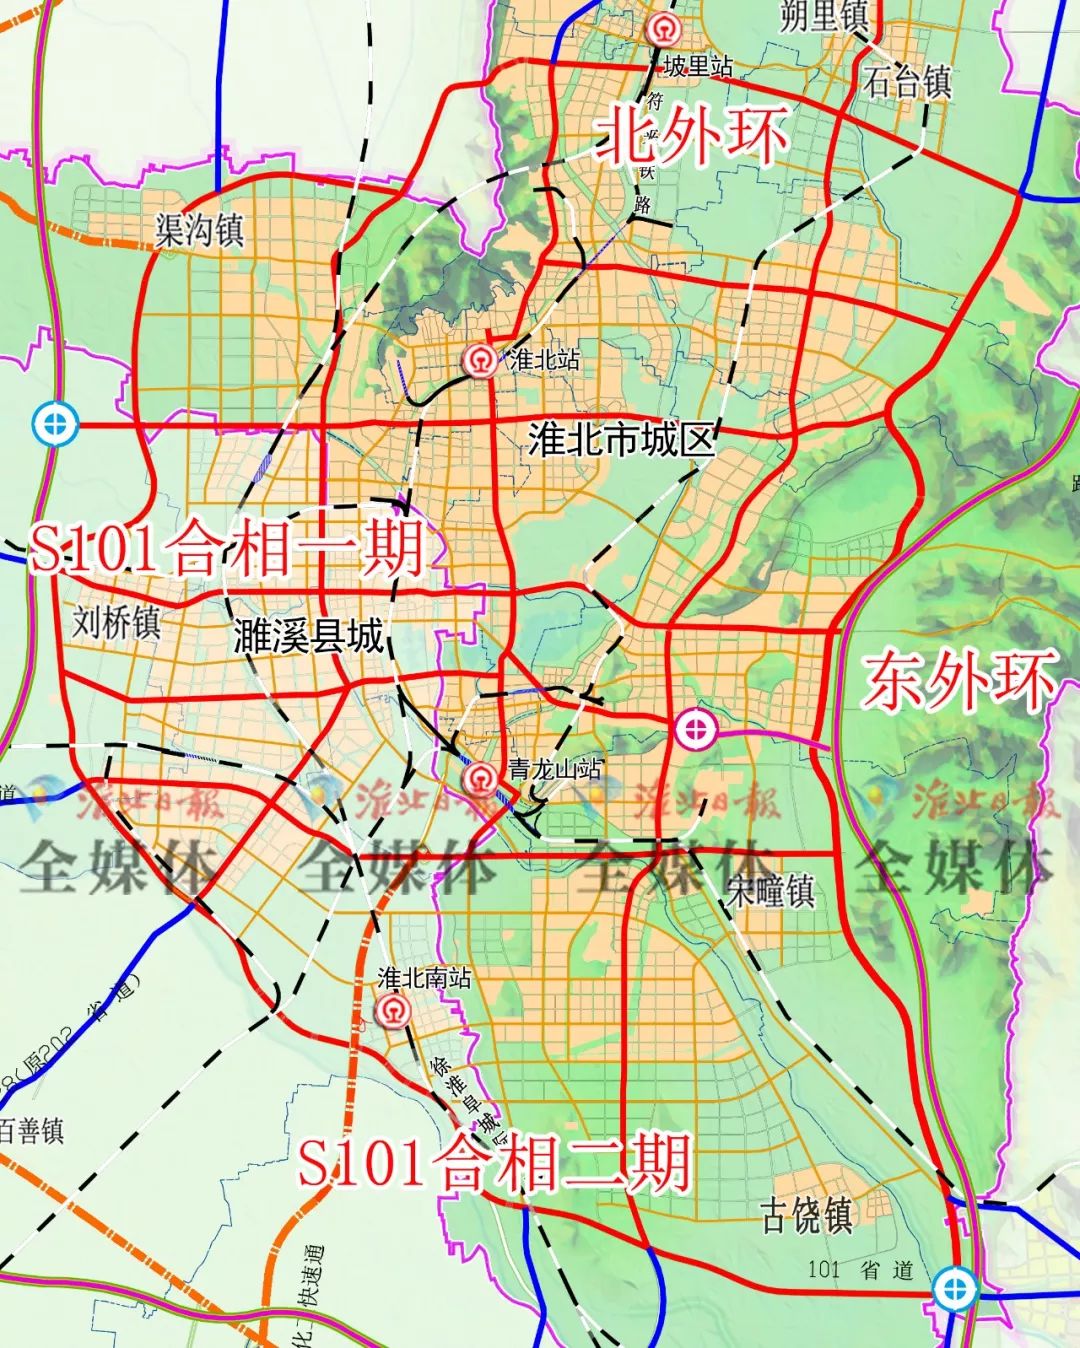 东外环,北外环,s254古毛路一起 淮北市城市总体规划(2016-2040年)